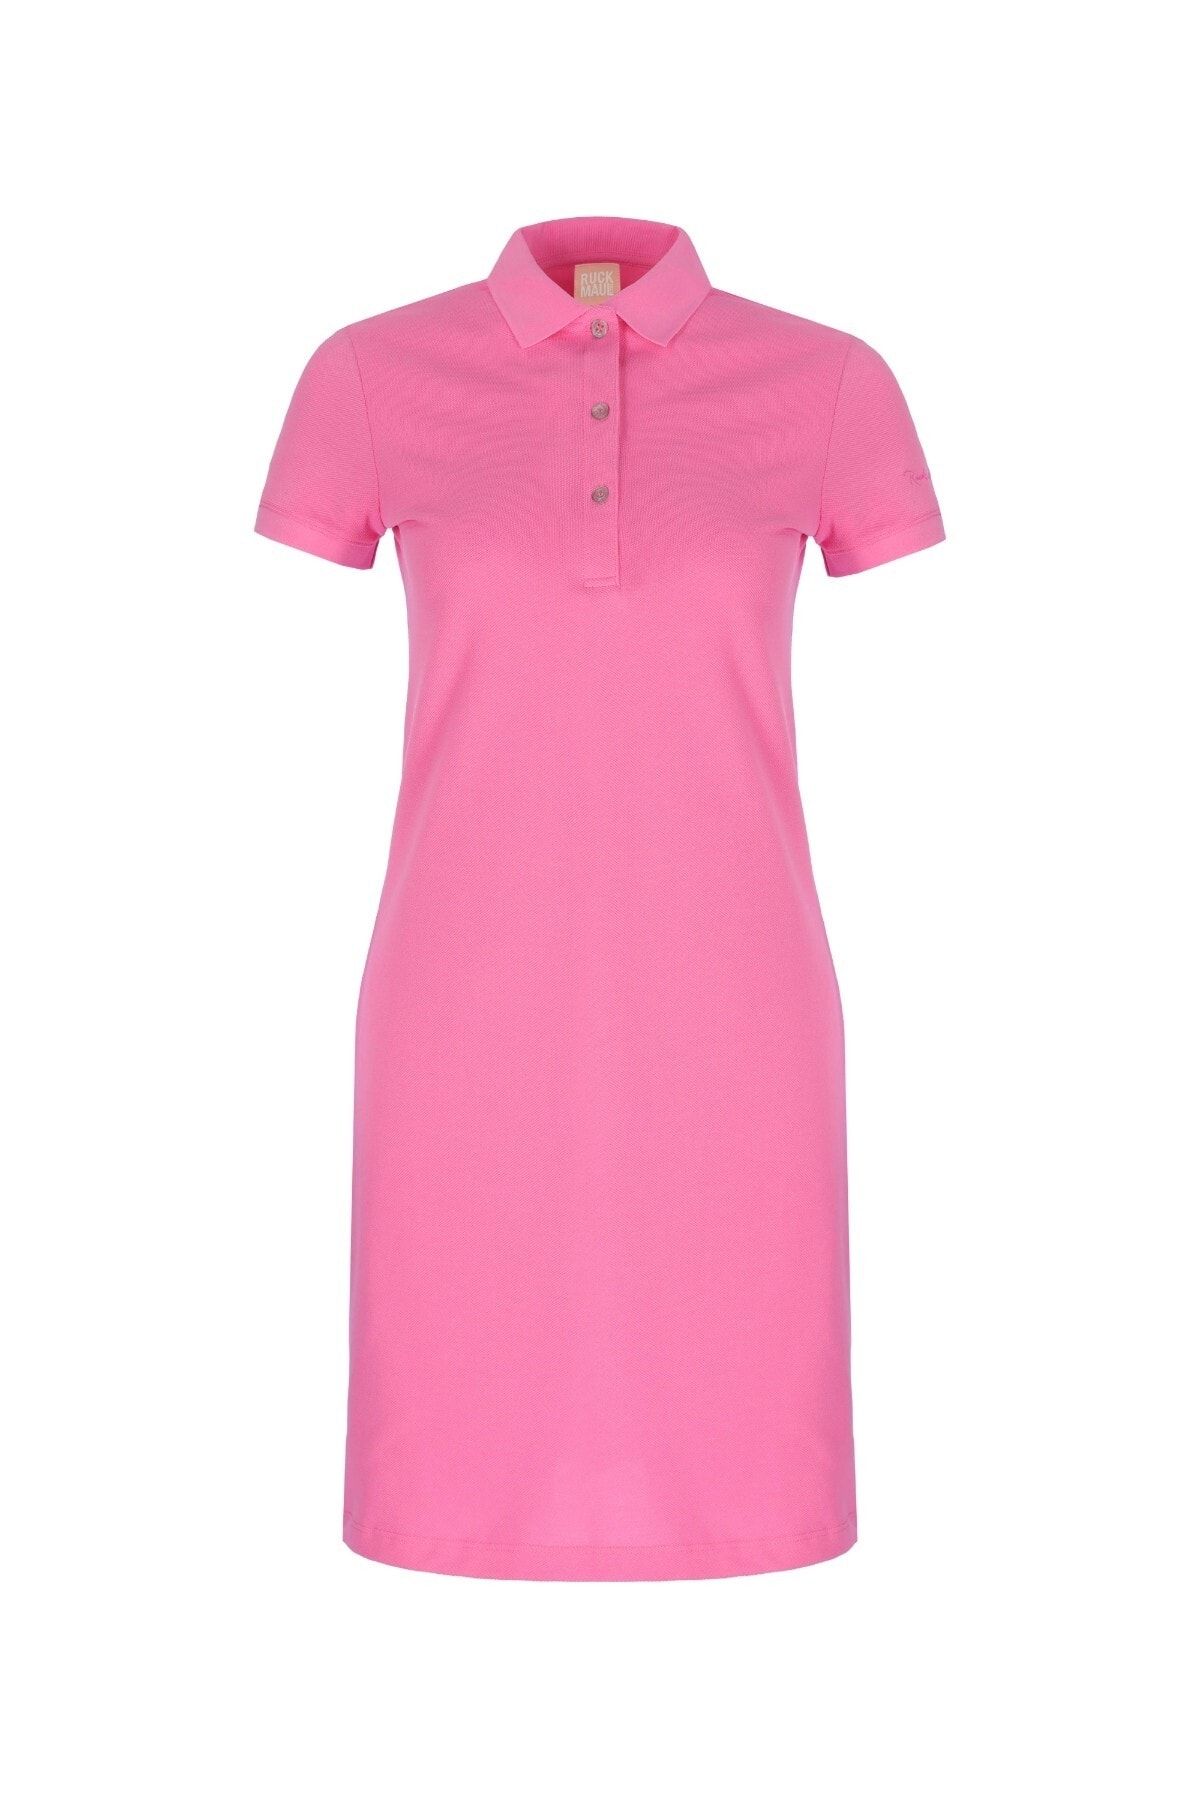 Ruck & Maul Kadın Elbise 22801 1421 Neon Pink